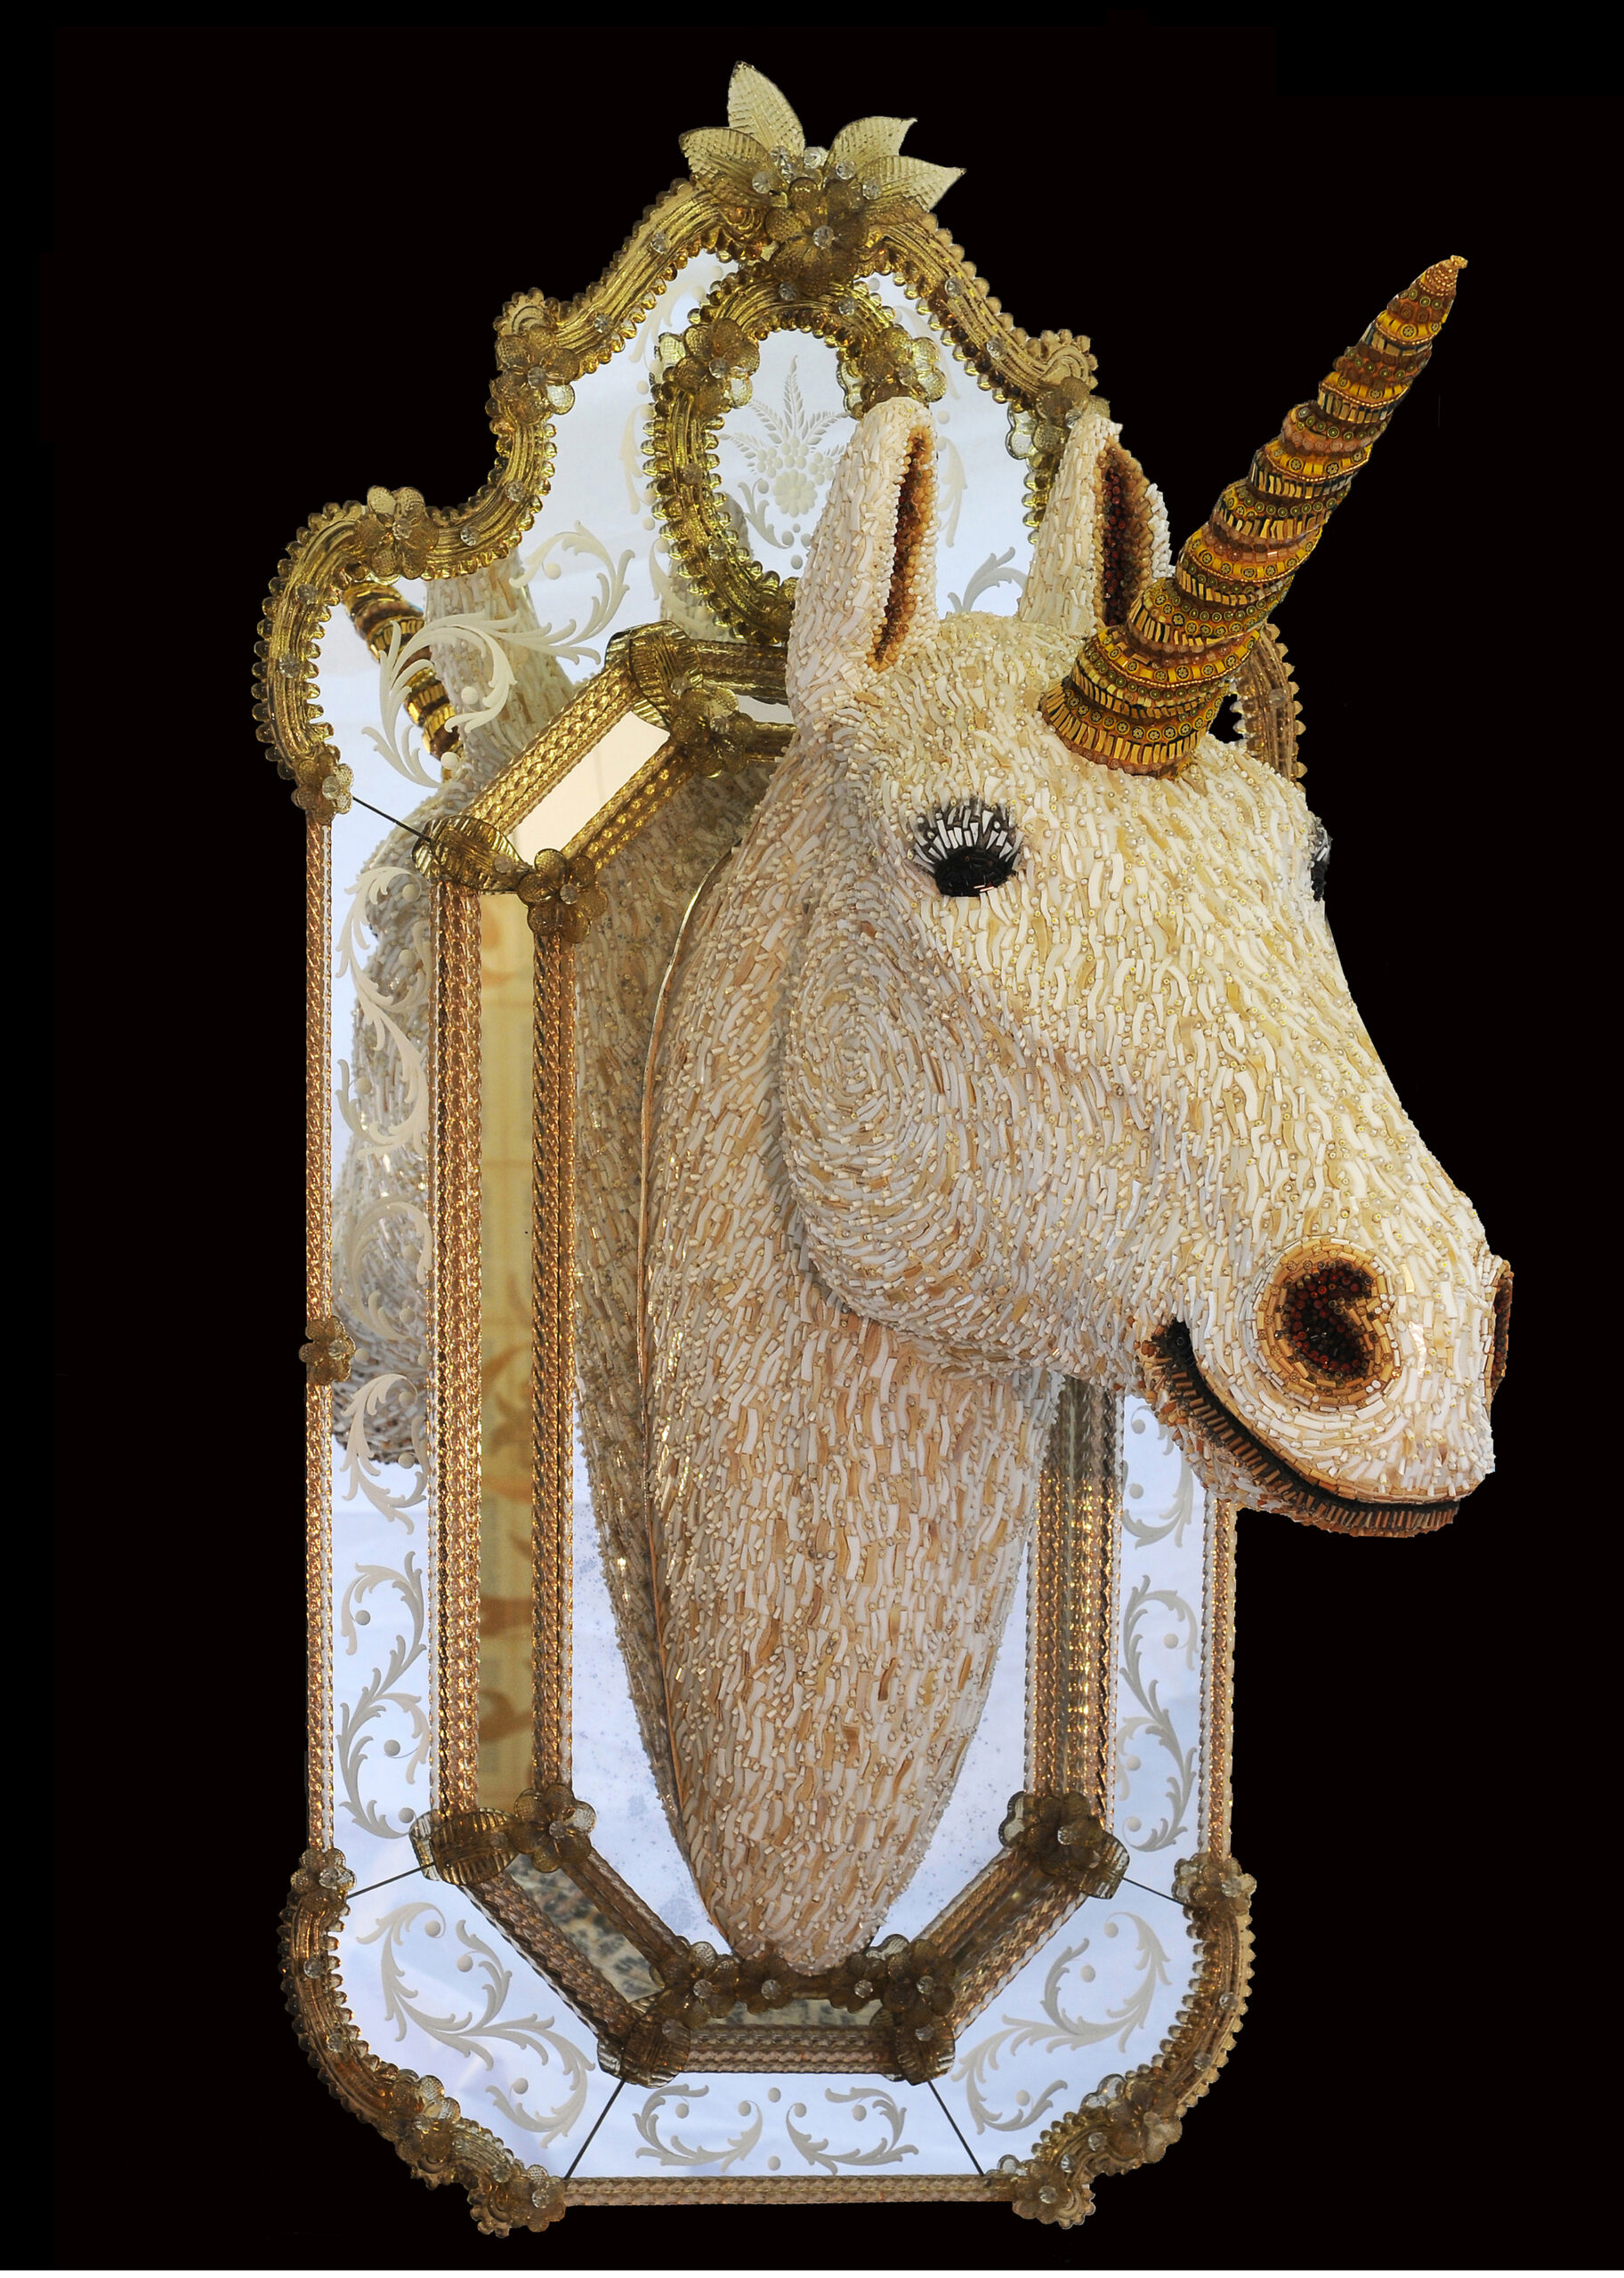 Dusciana Bravura, Unicorno, 2007, scultura musiva tessellata paste vitree, smalti, murrine su specchiera, 116 x 60 x 70 cm, Ravenna, MAR - Museo d’Arte della città di Ravenna